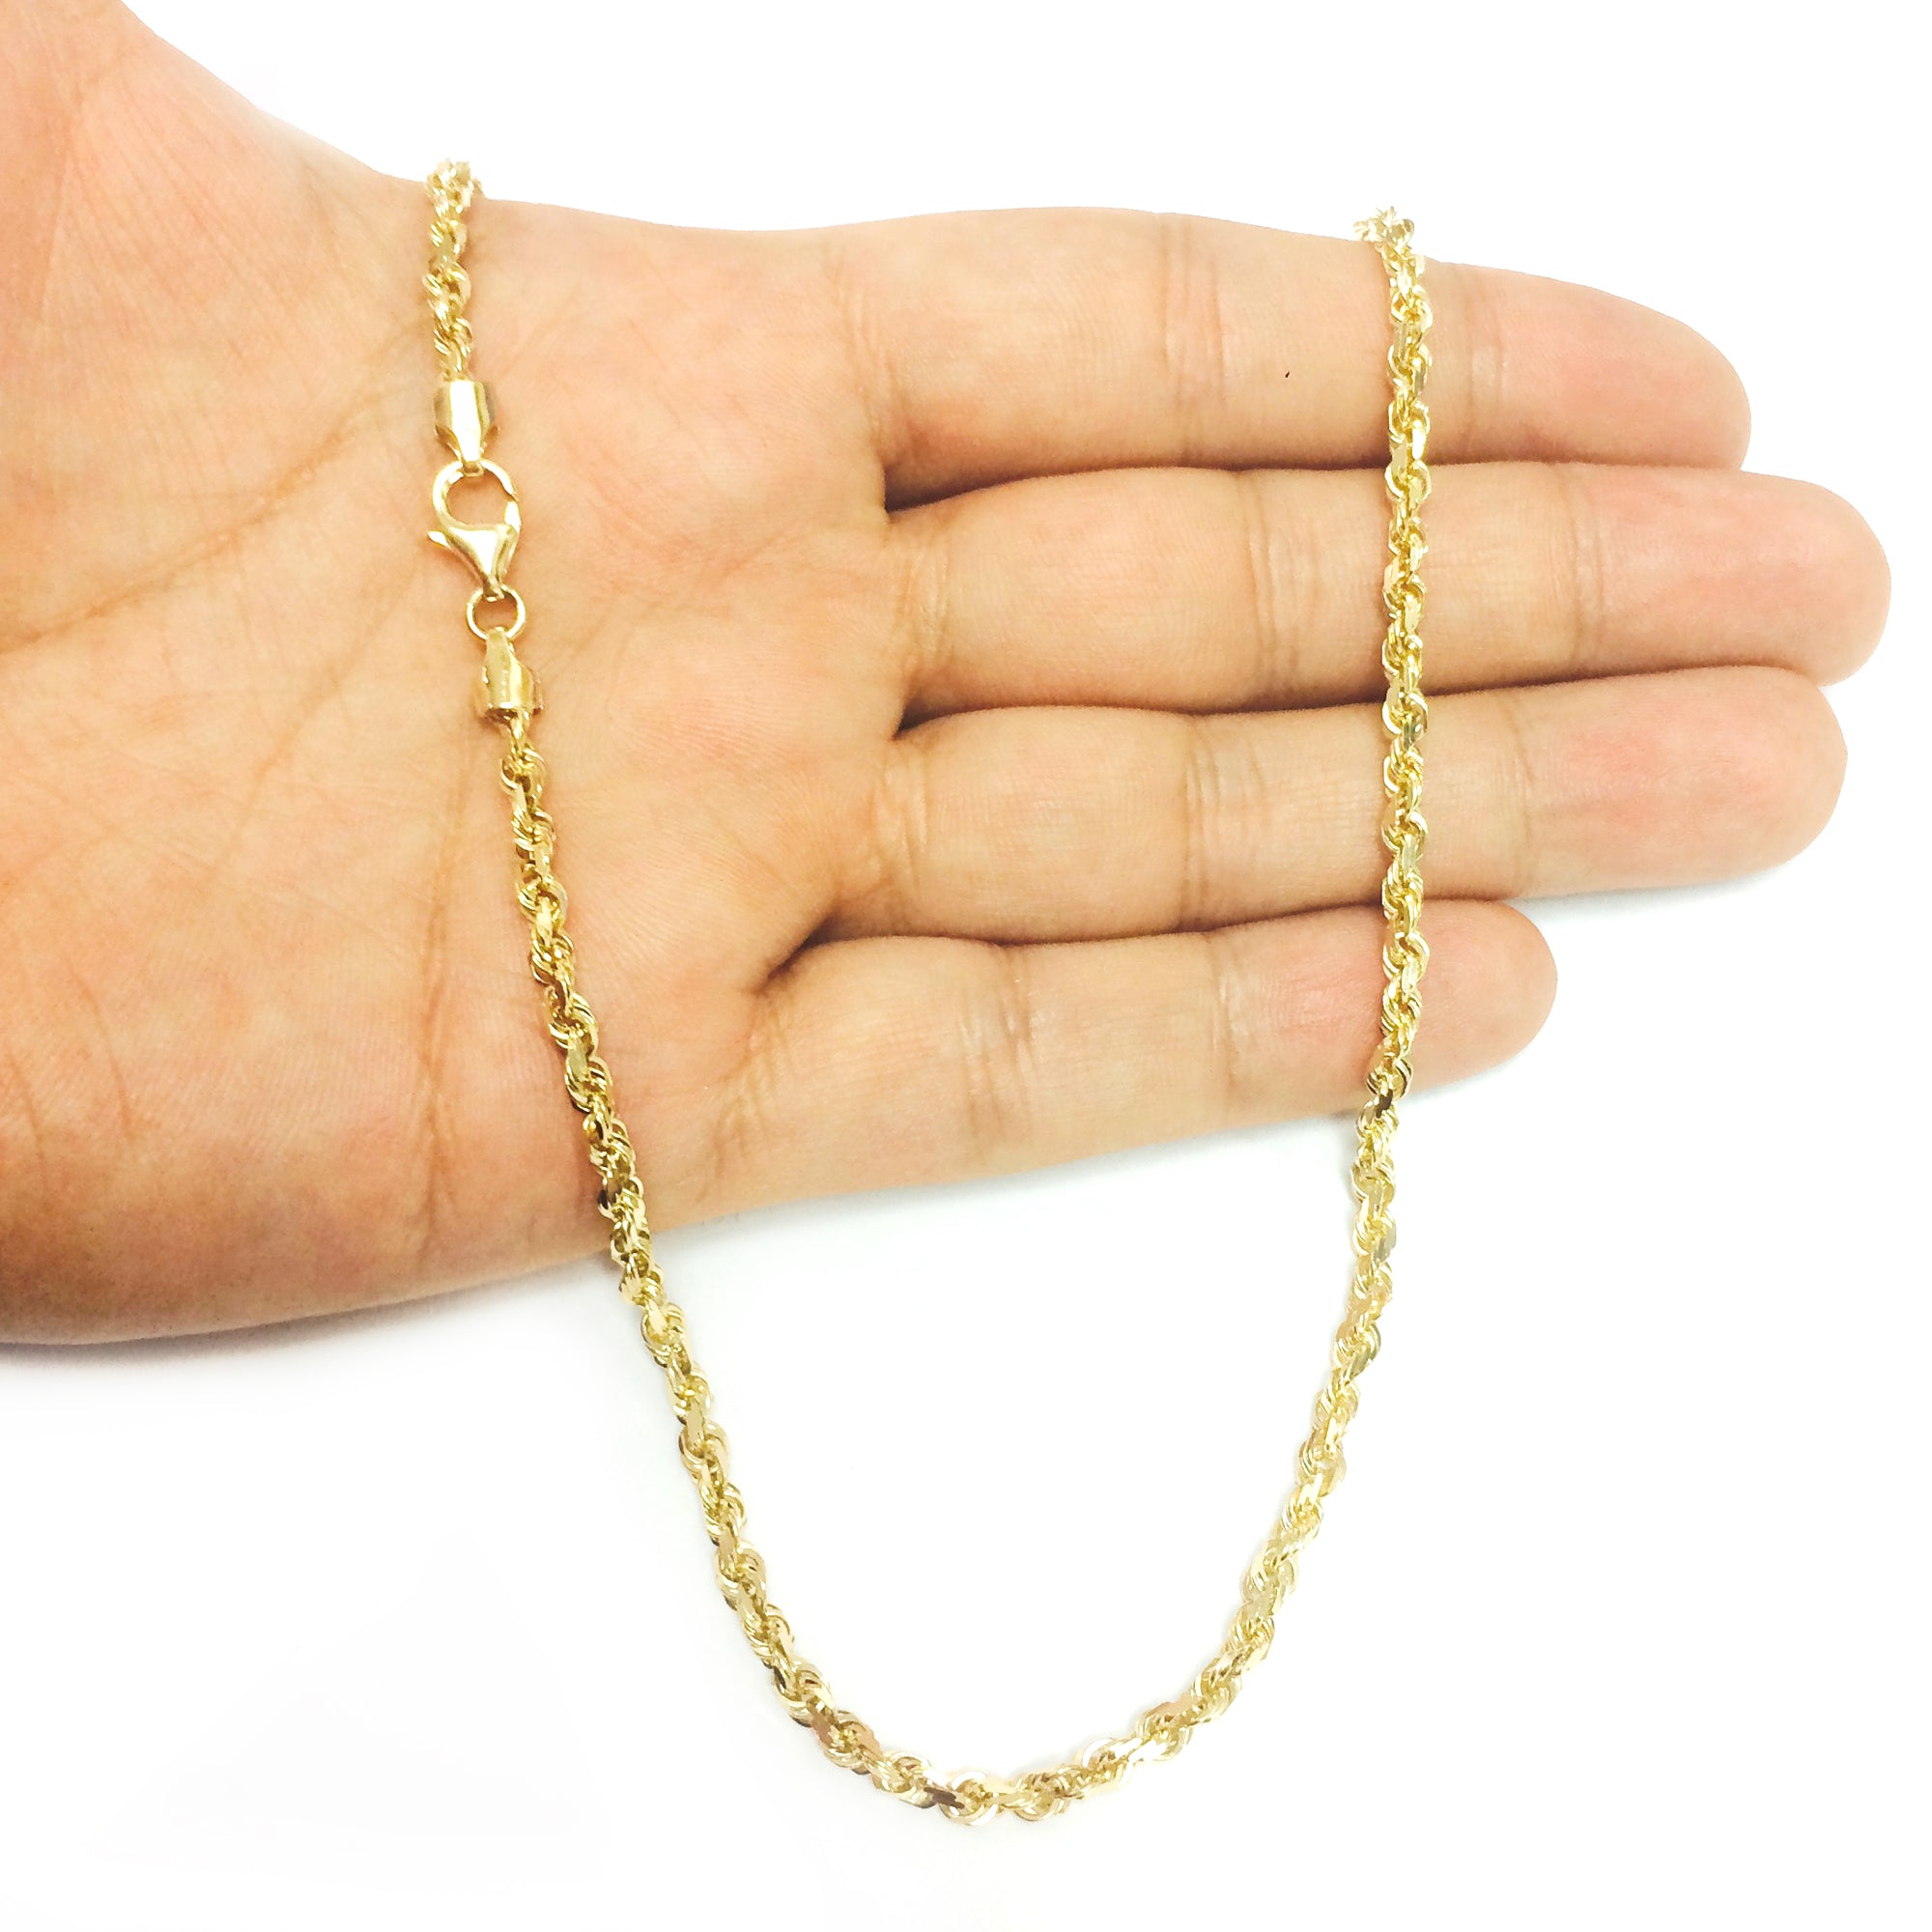 10 k gult massivt guld diamantskuret repkedja halsband, 3,5 mm fina designersmycken för män och kvinnor